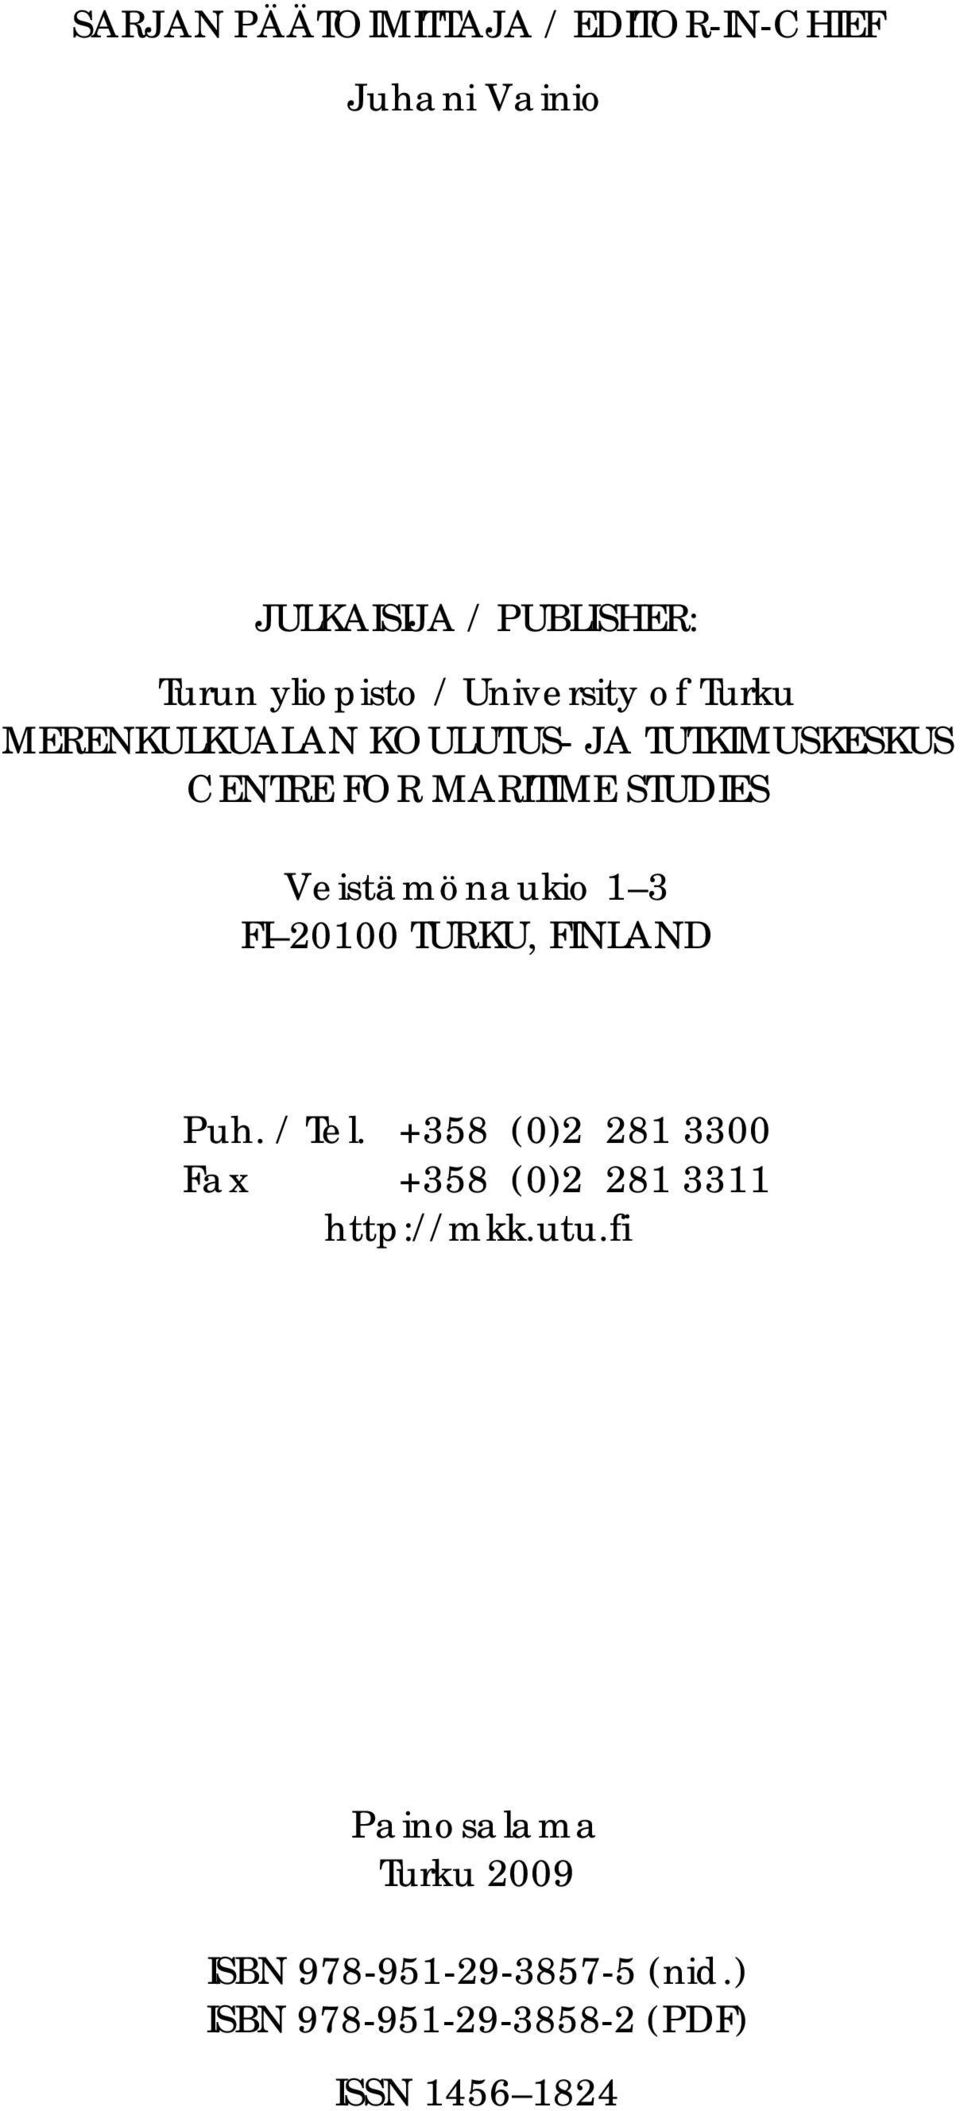 Veistämönaukio 1 3 FI 20100 TURKU, FINLAND Puh. / Tel.